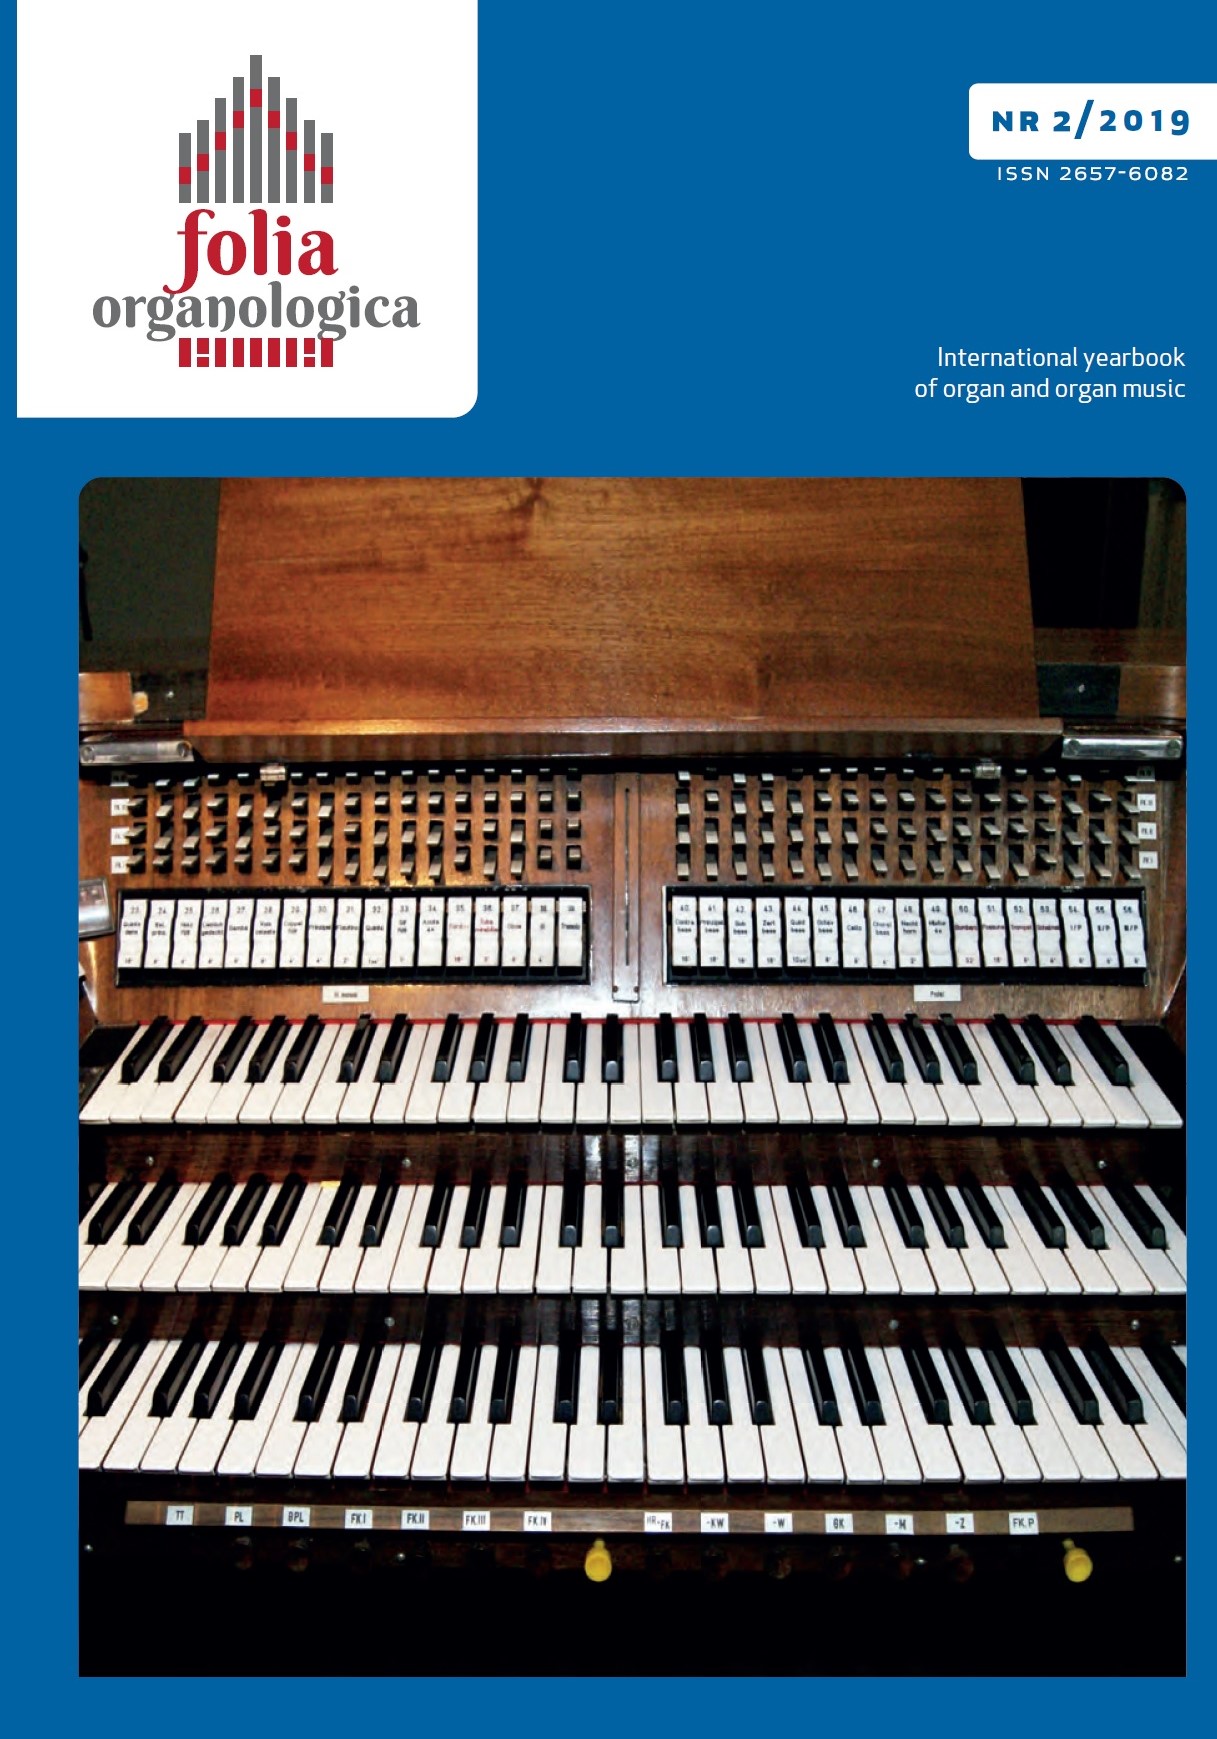 KRZYSZTOF URBANIAK, The Renaissance Organ of Olkusz.
Ars Sonora 2019
Basilica Minor St. Andrew the Apostle, Olkusz, Poland Cover Image